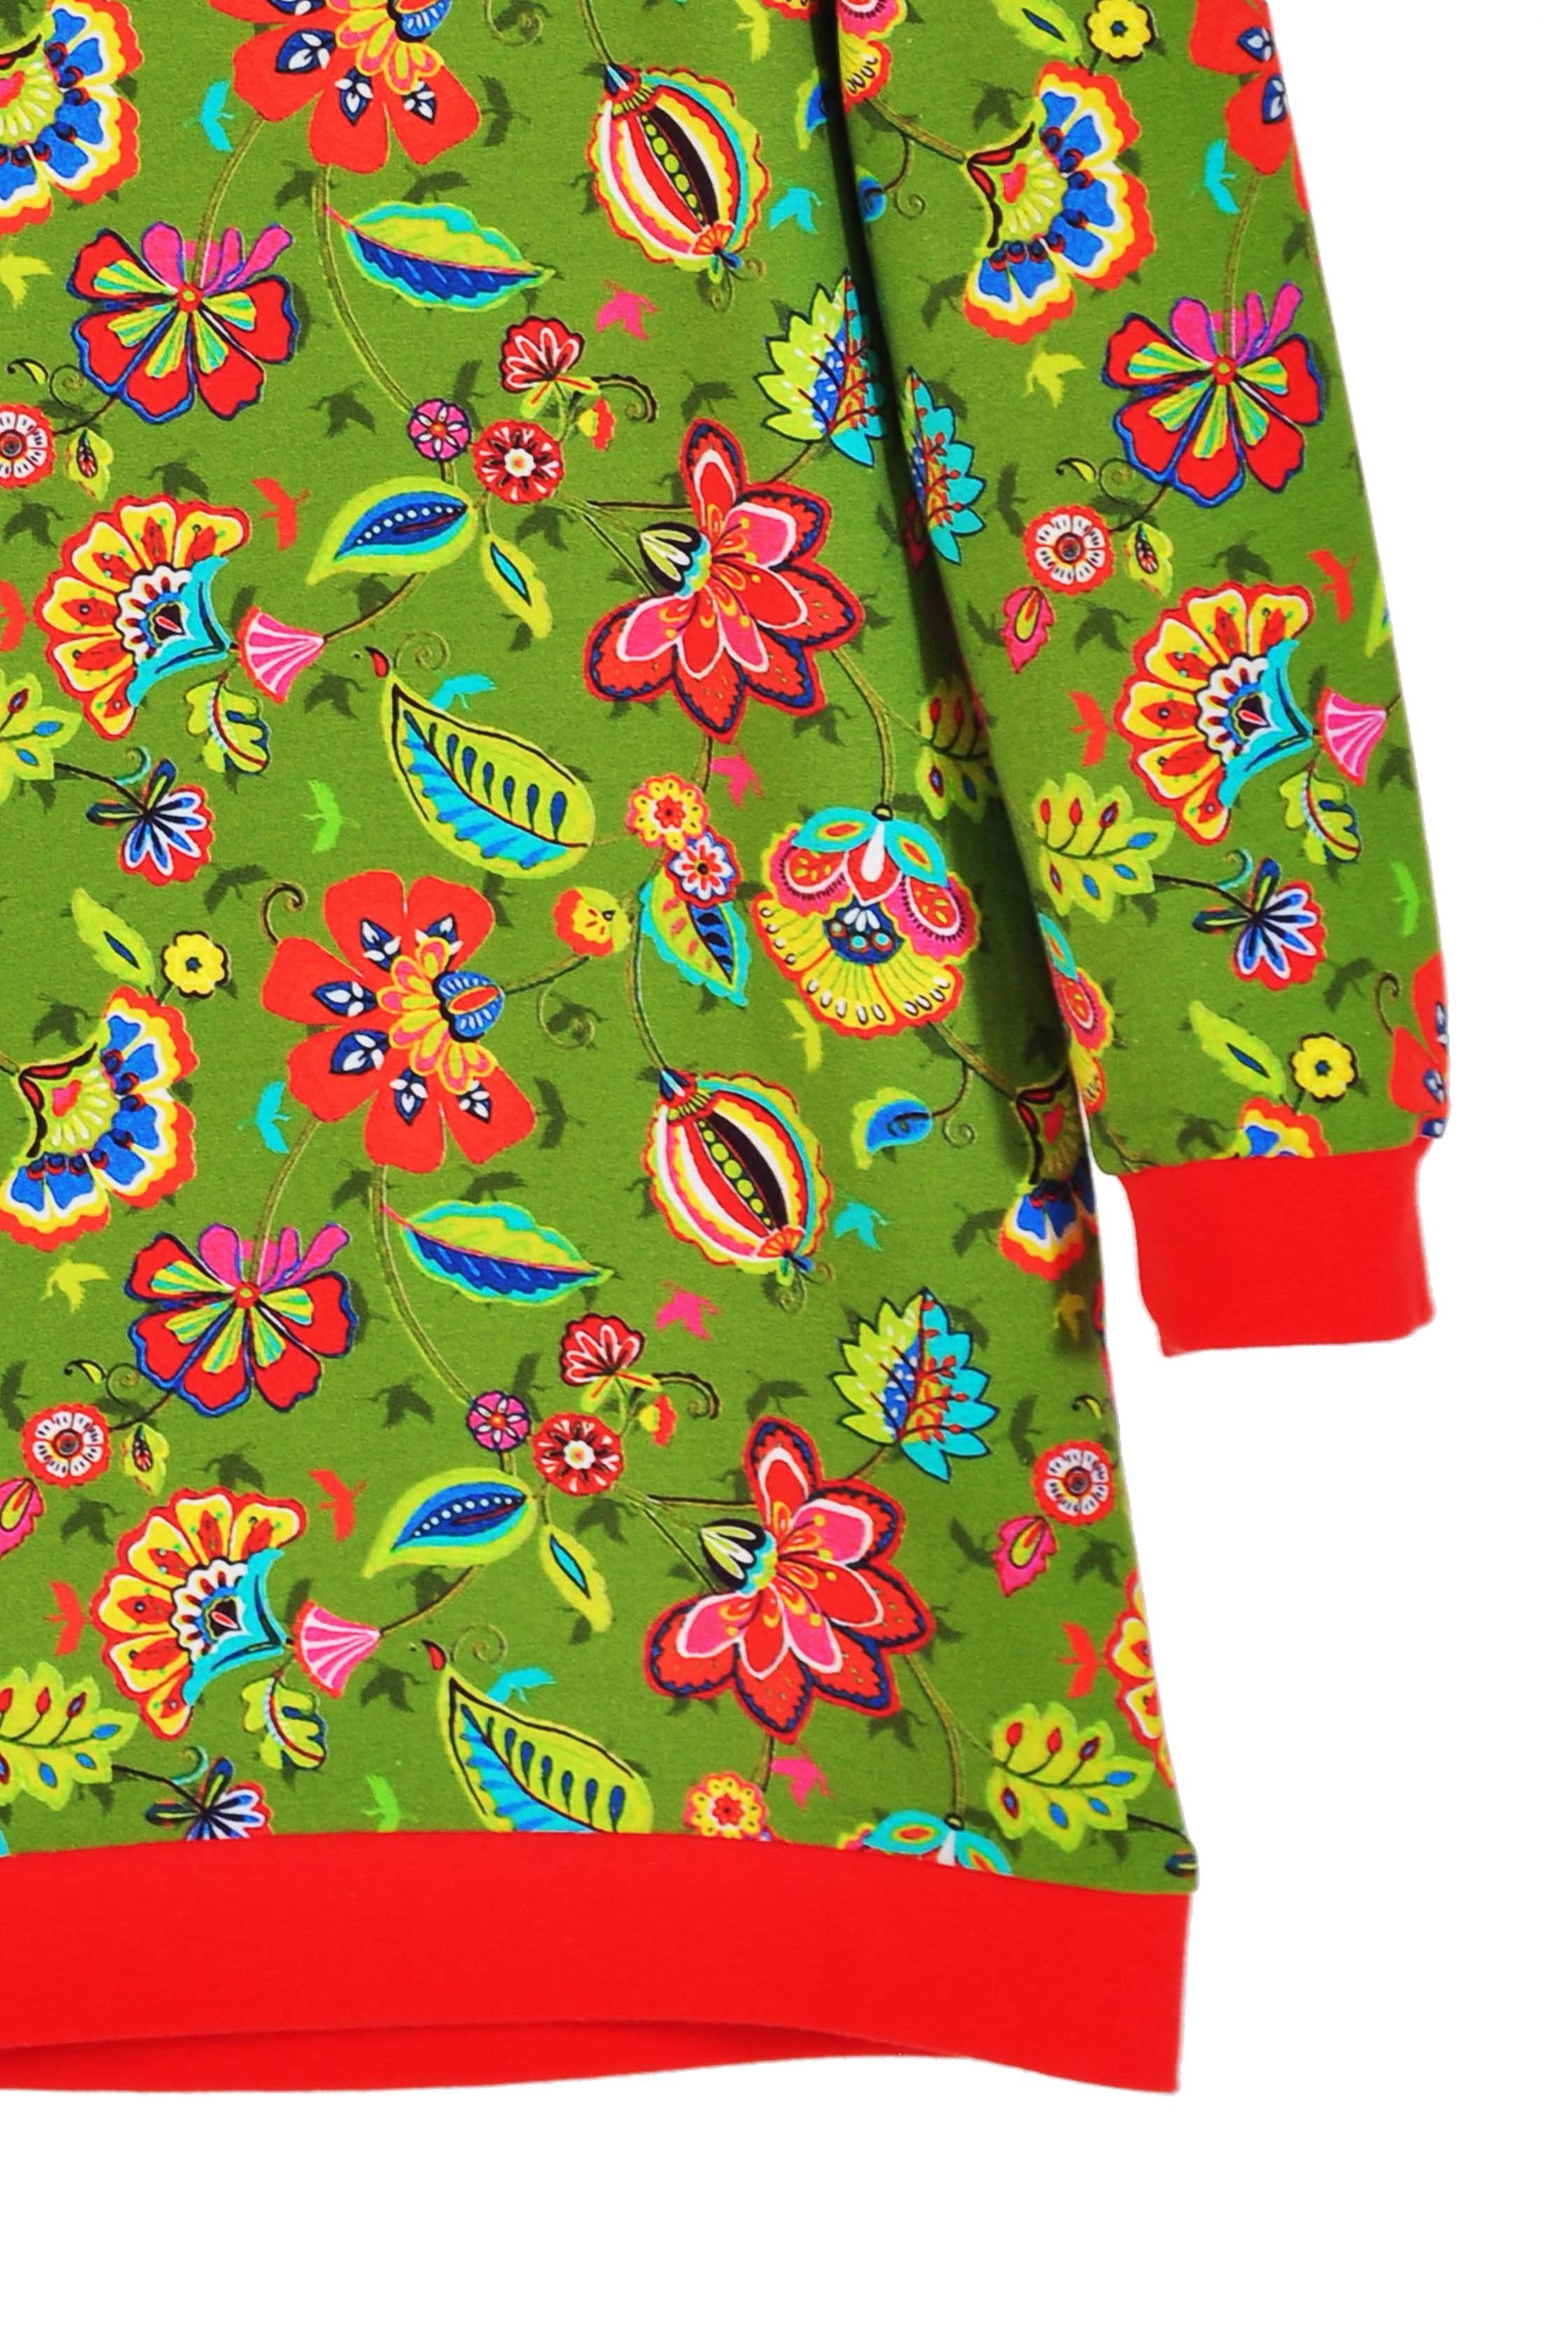 coolismo Sweatkleid Sweatshirt Produktion europäische Mädchen mit Kleid Motivdruck für Blumen oliv coole